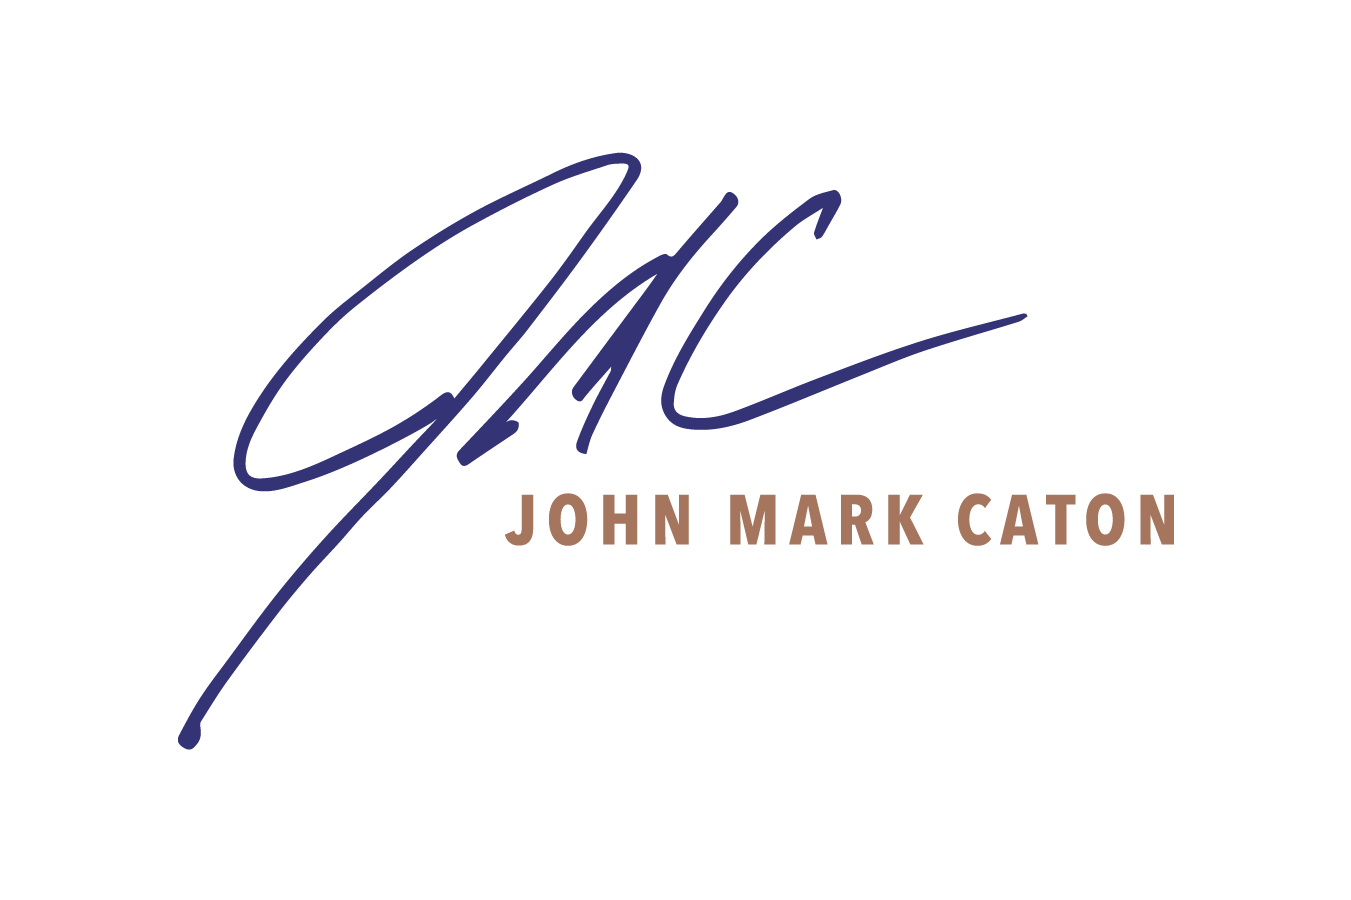 John Mark Caton